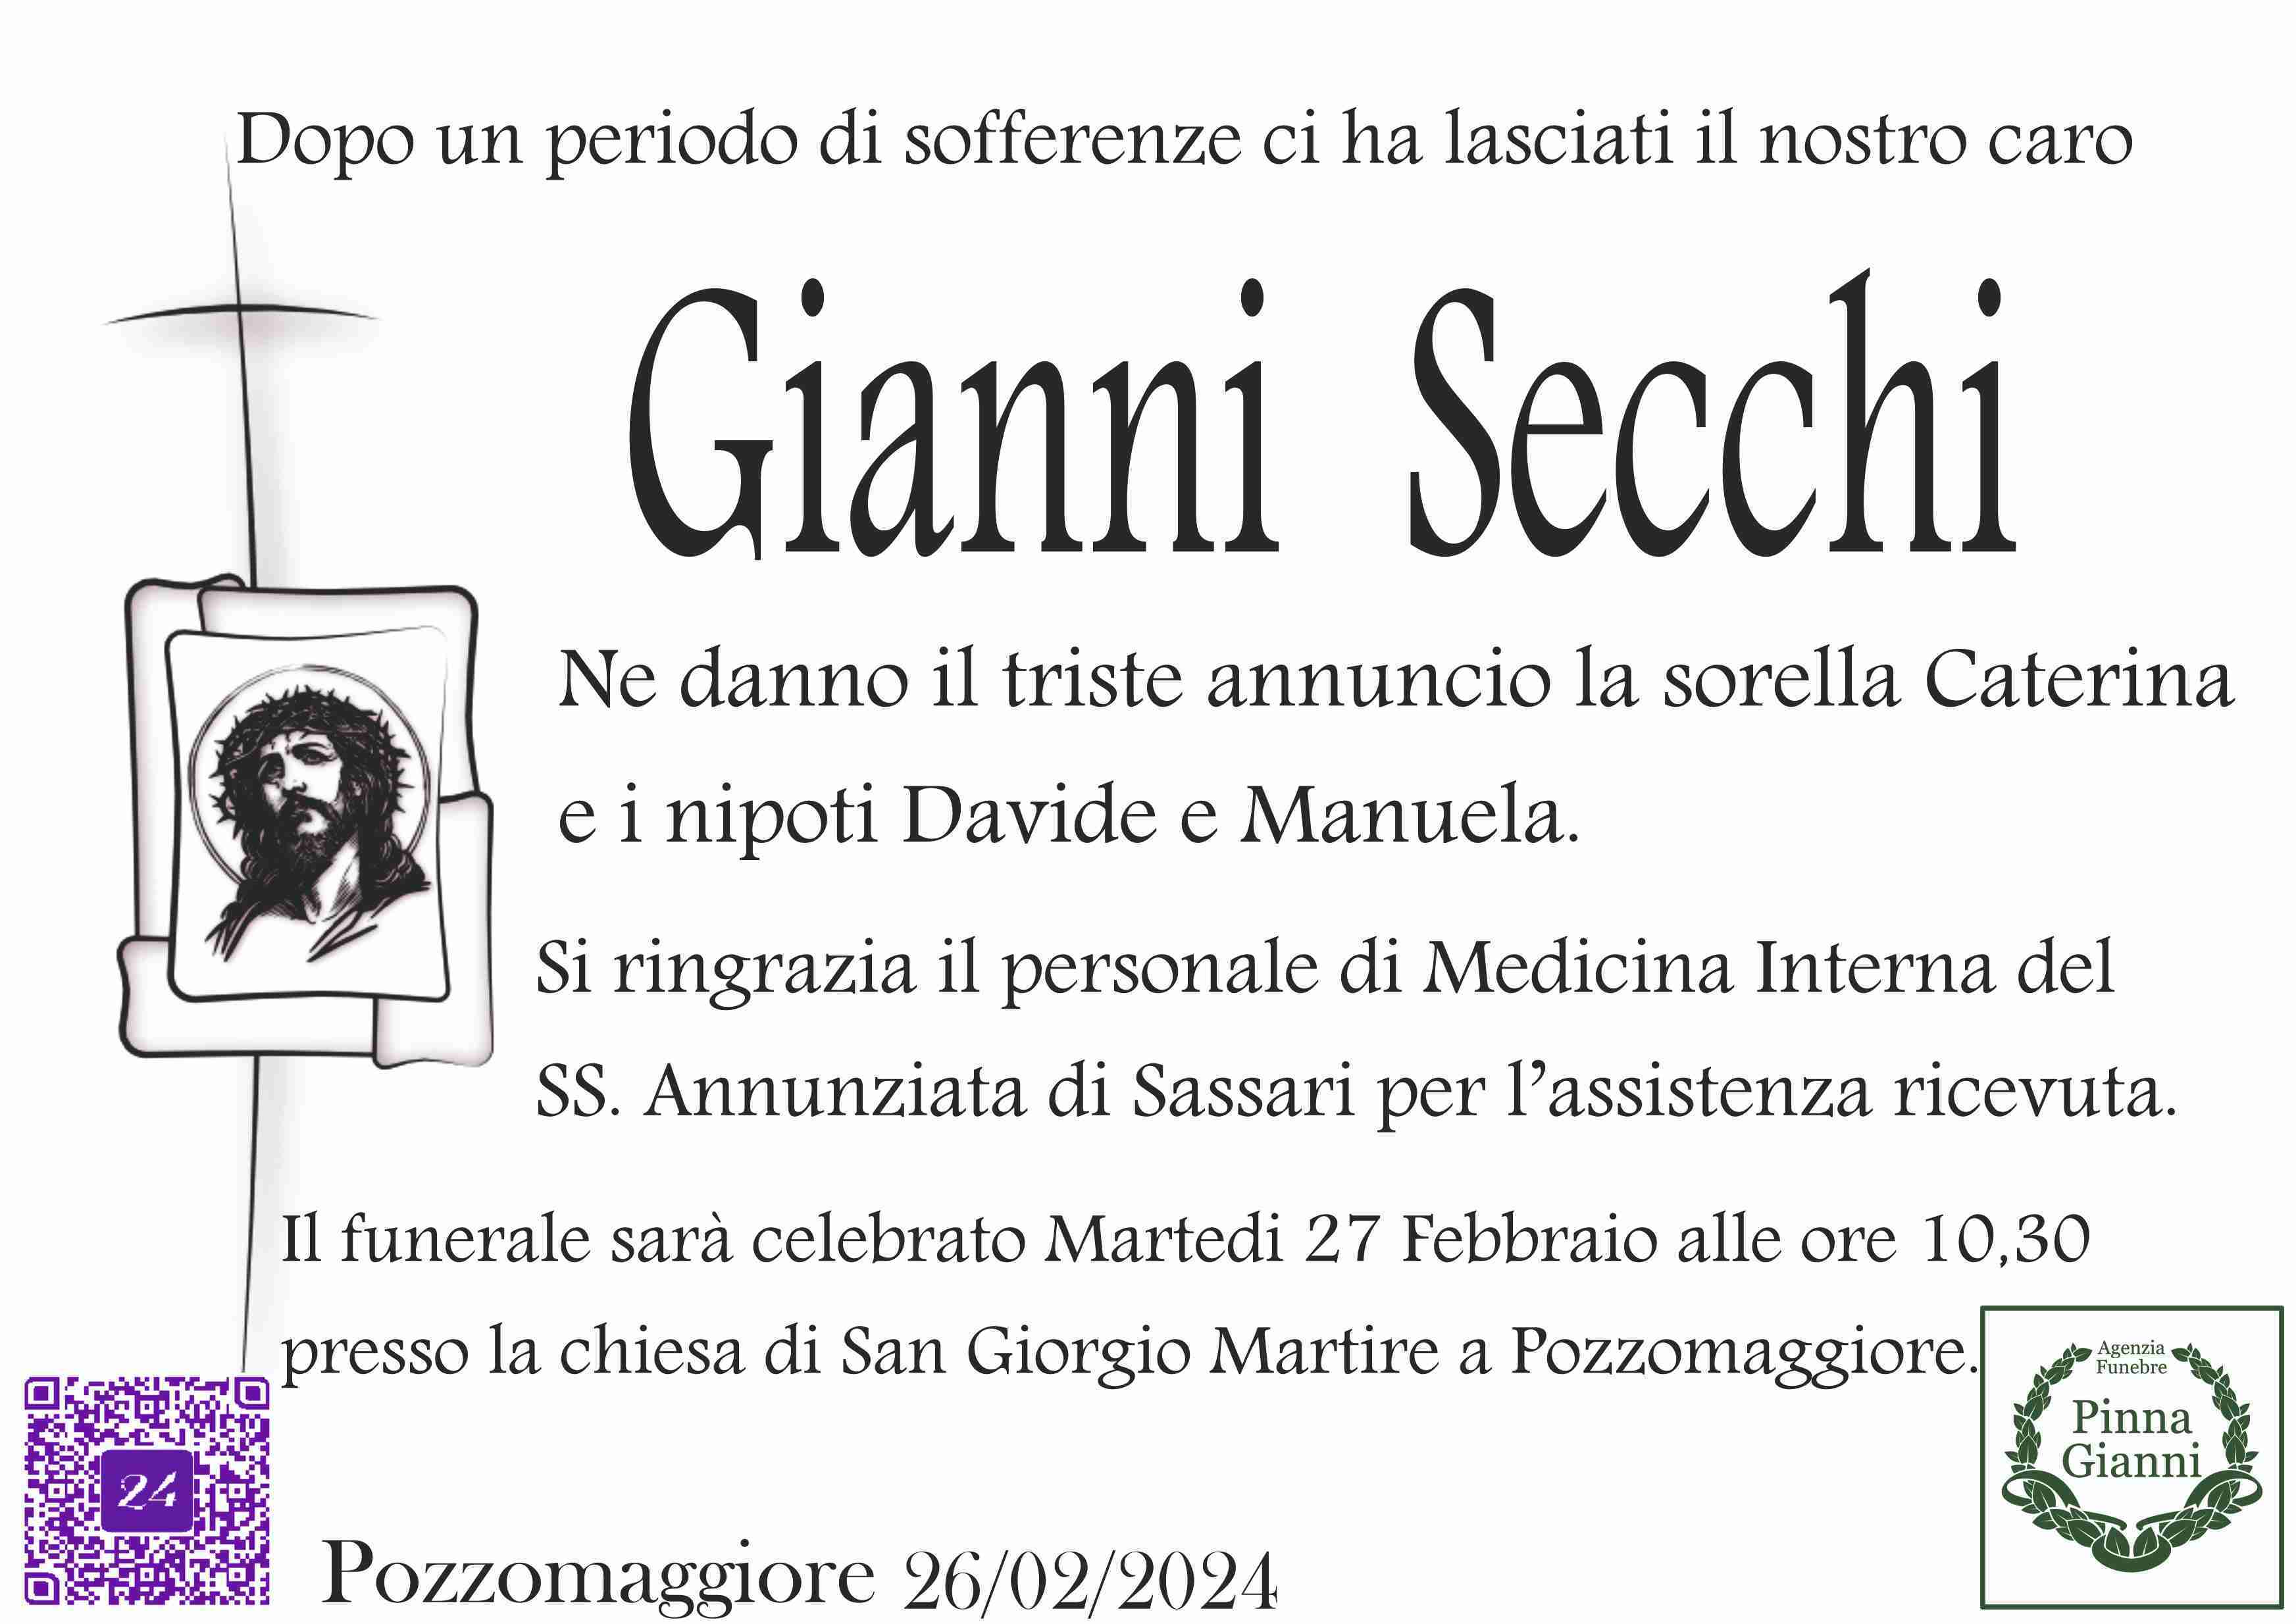 Gianni Secchi